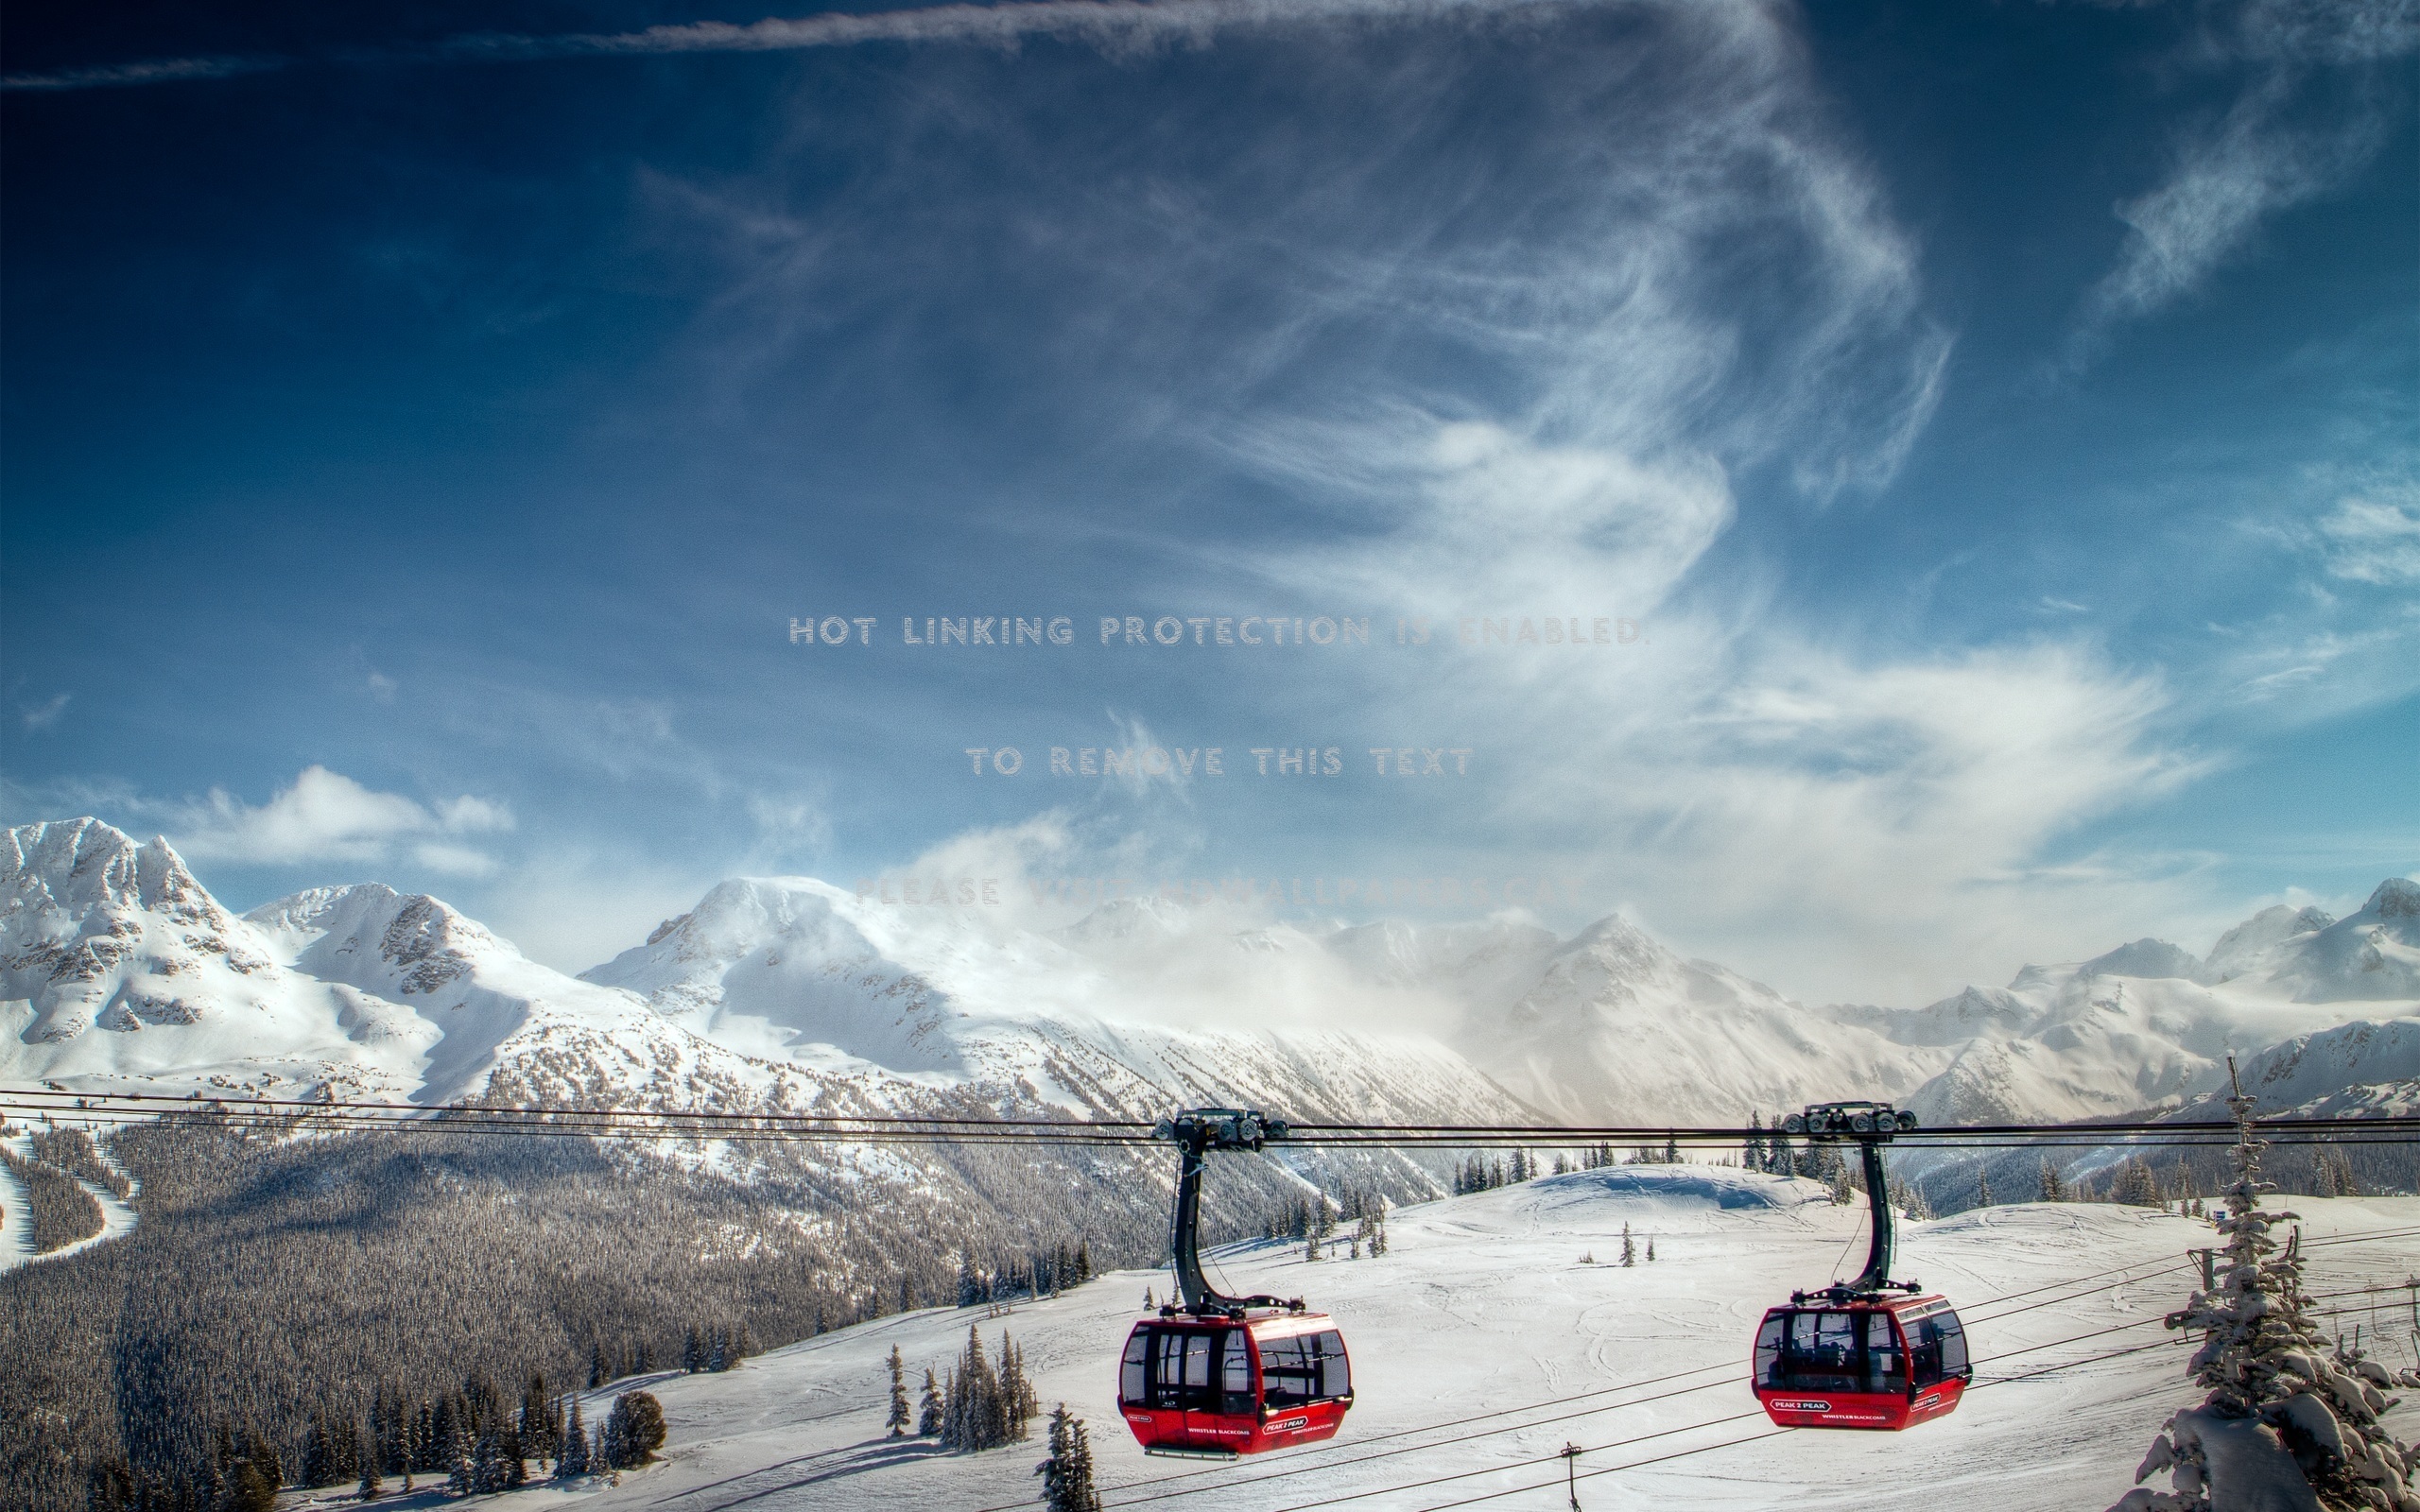 whistler valley mountains snow gondolas ski